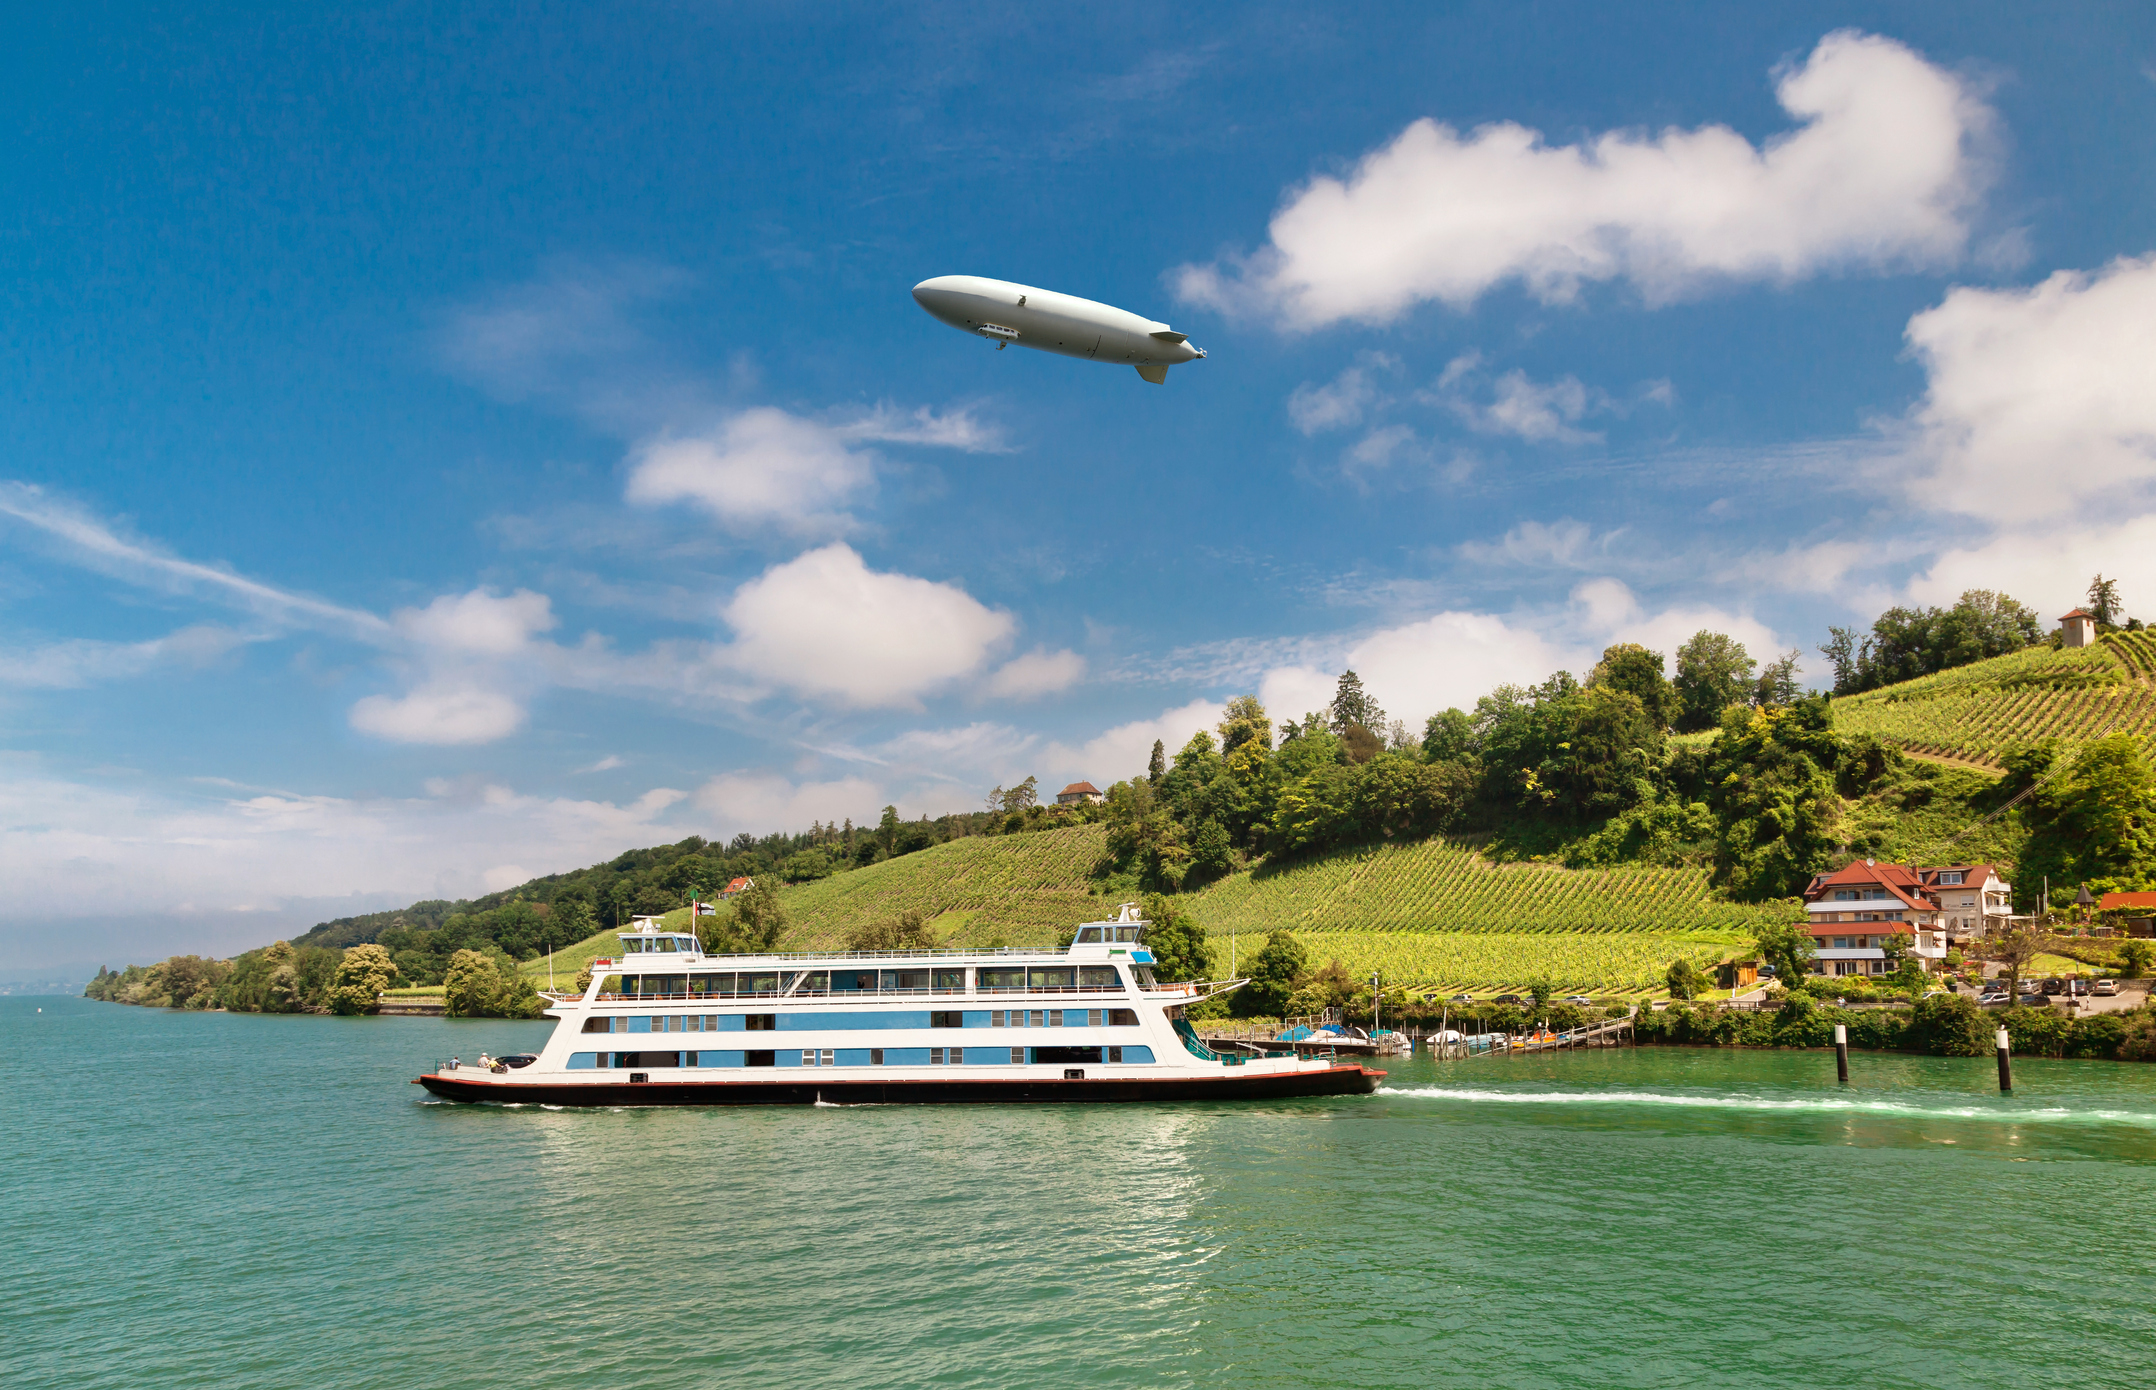 Ein Zeppelin schwebt über einer Flusslandschaft mit Weinbergen und einer Fähre.